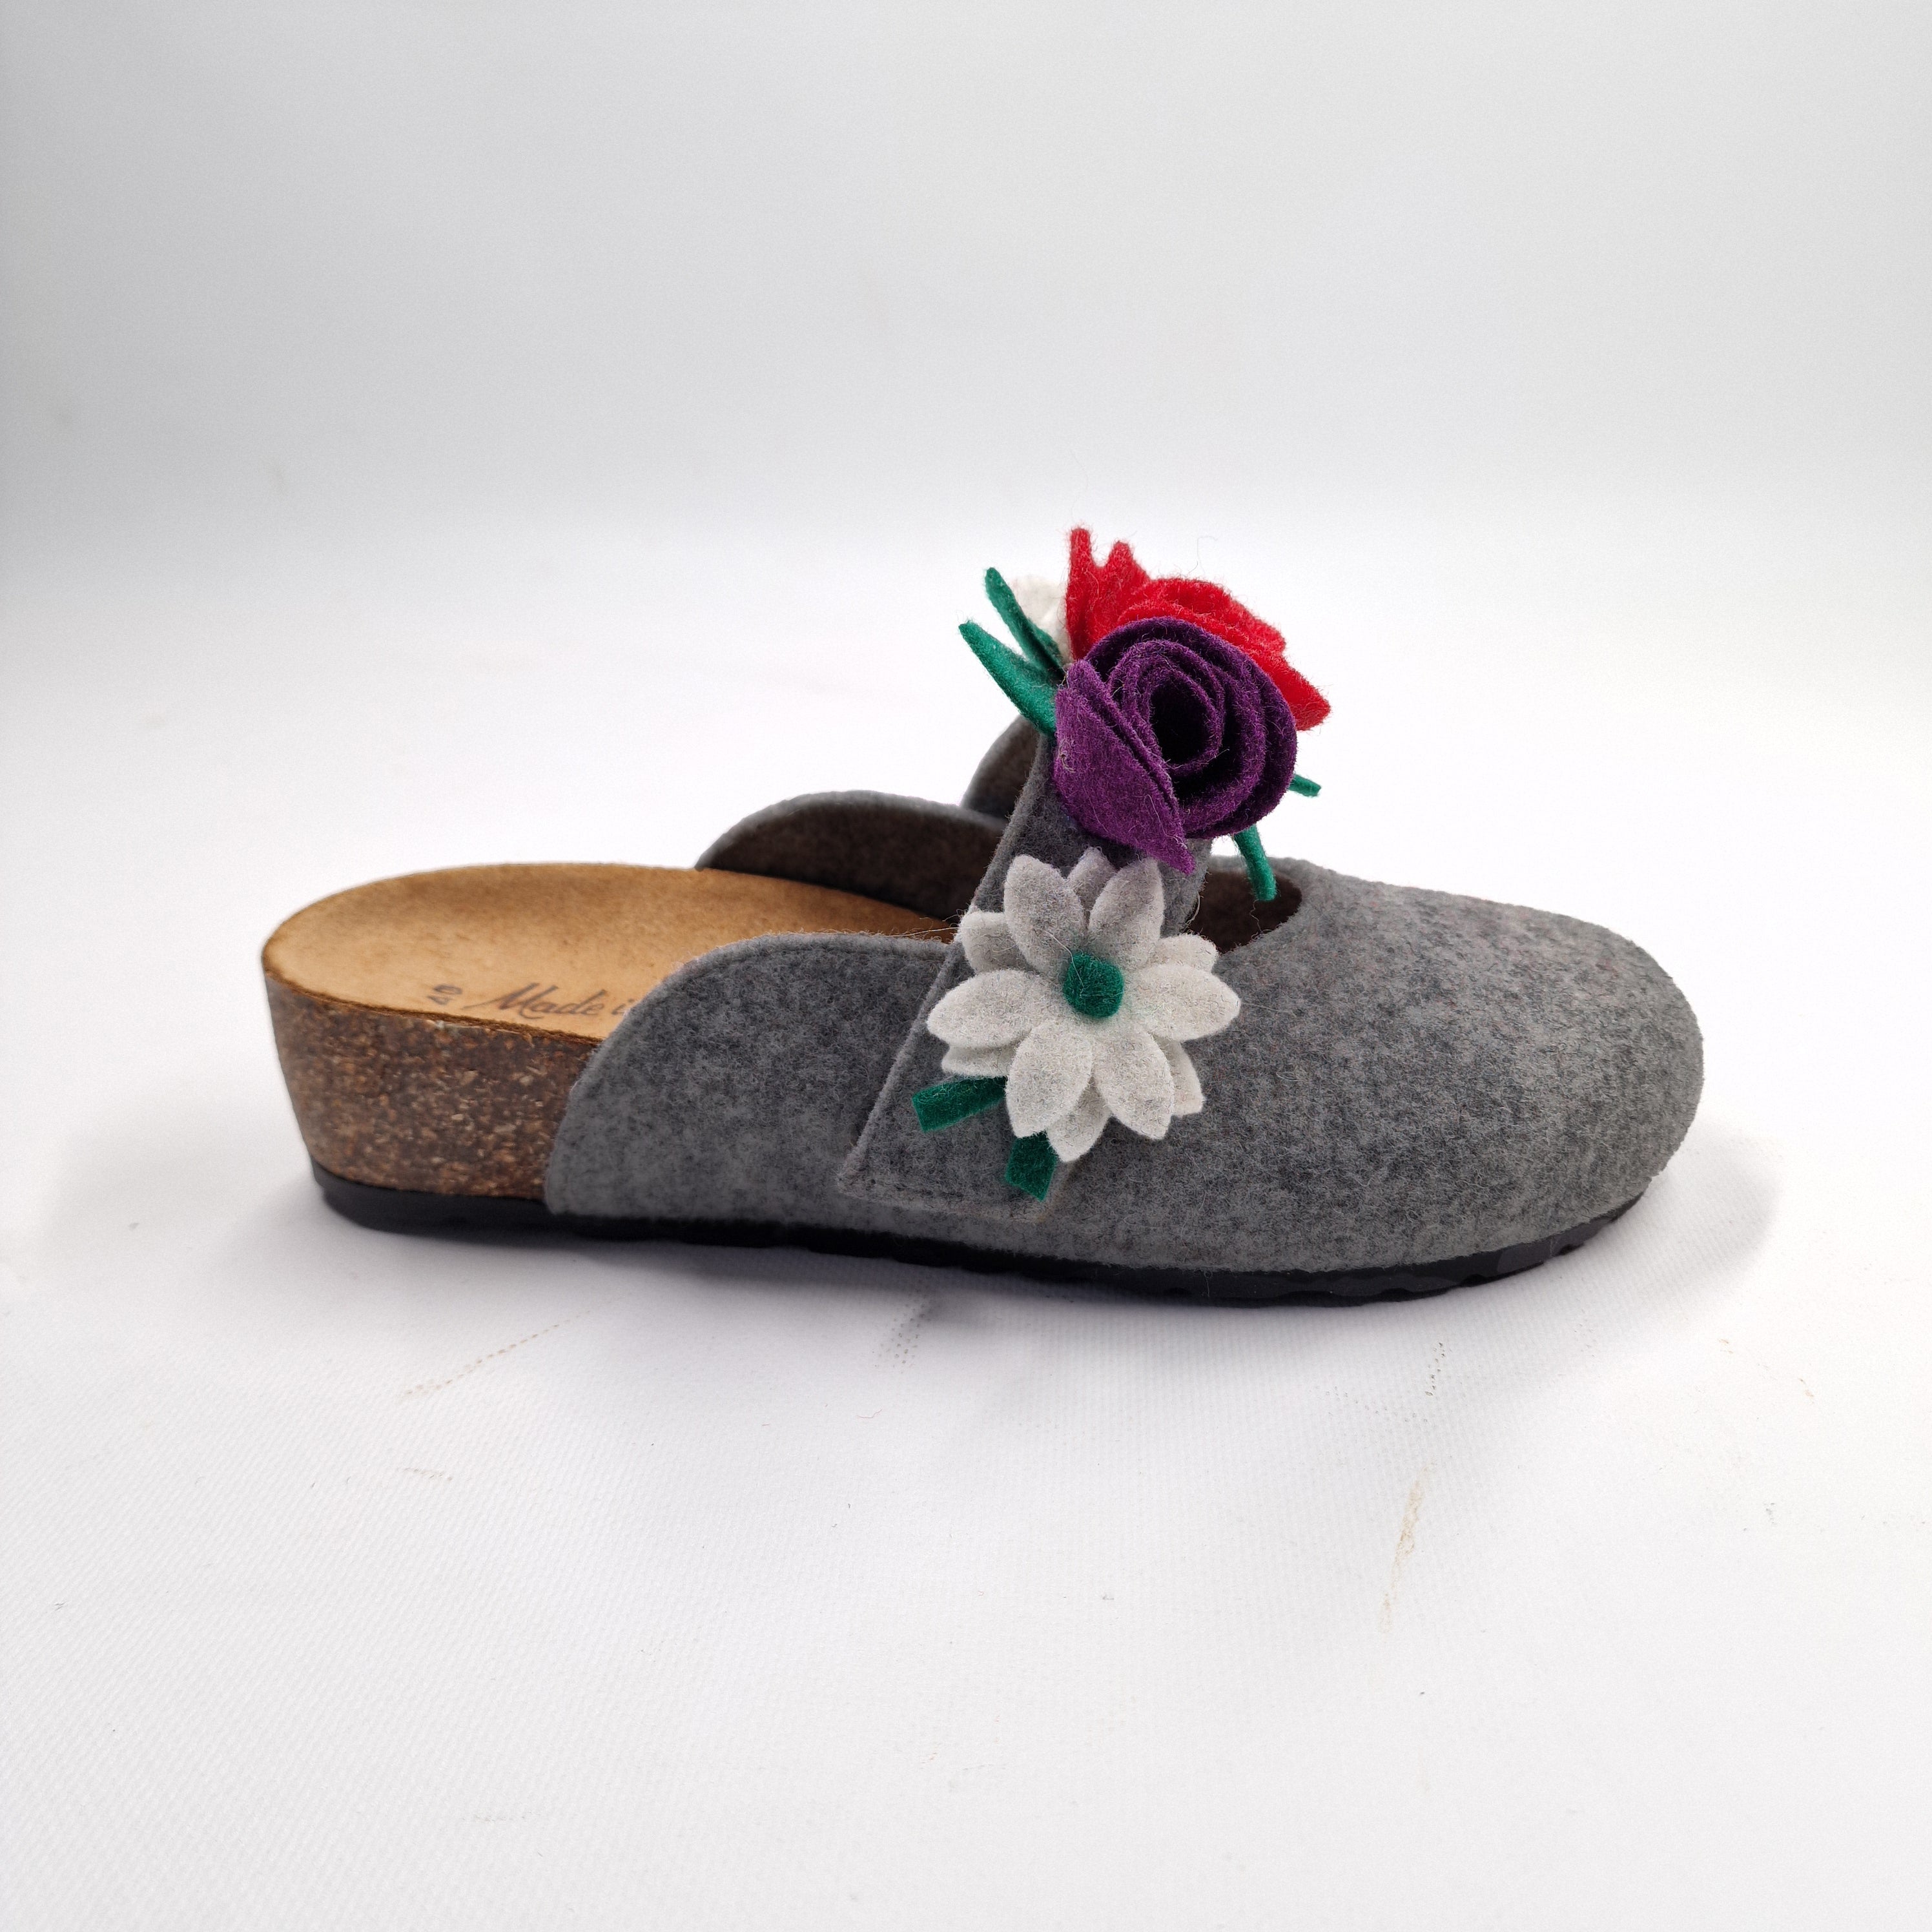 Pantofola DONNA in lana. Colore VARI con fiori | 4011